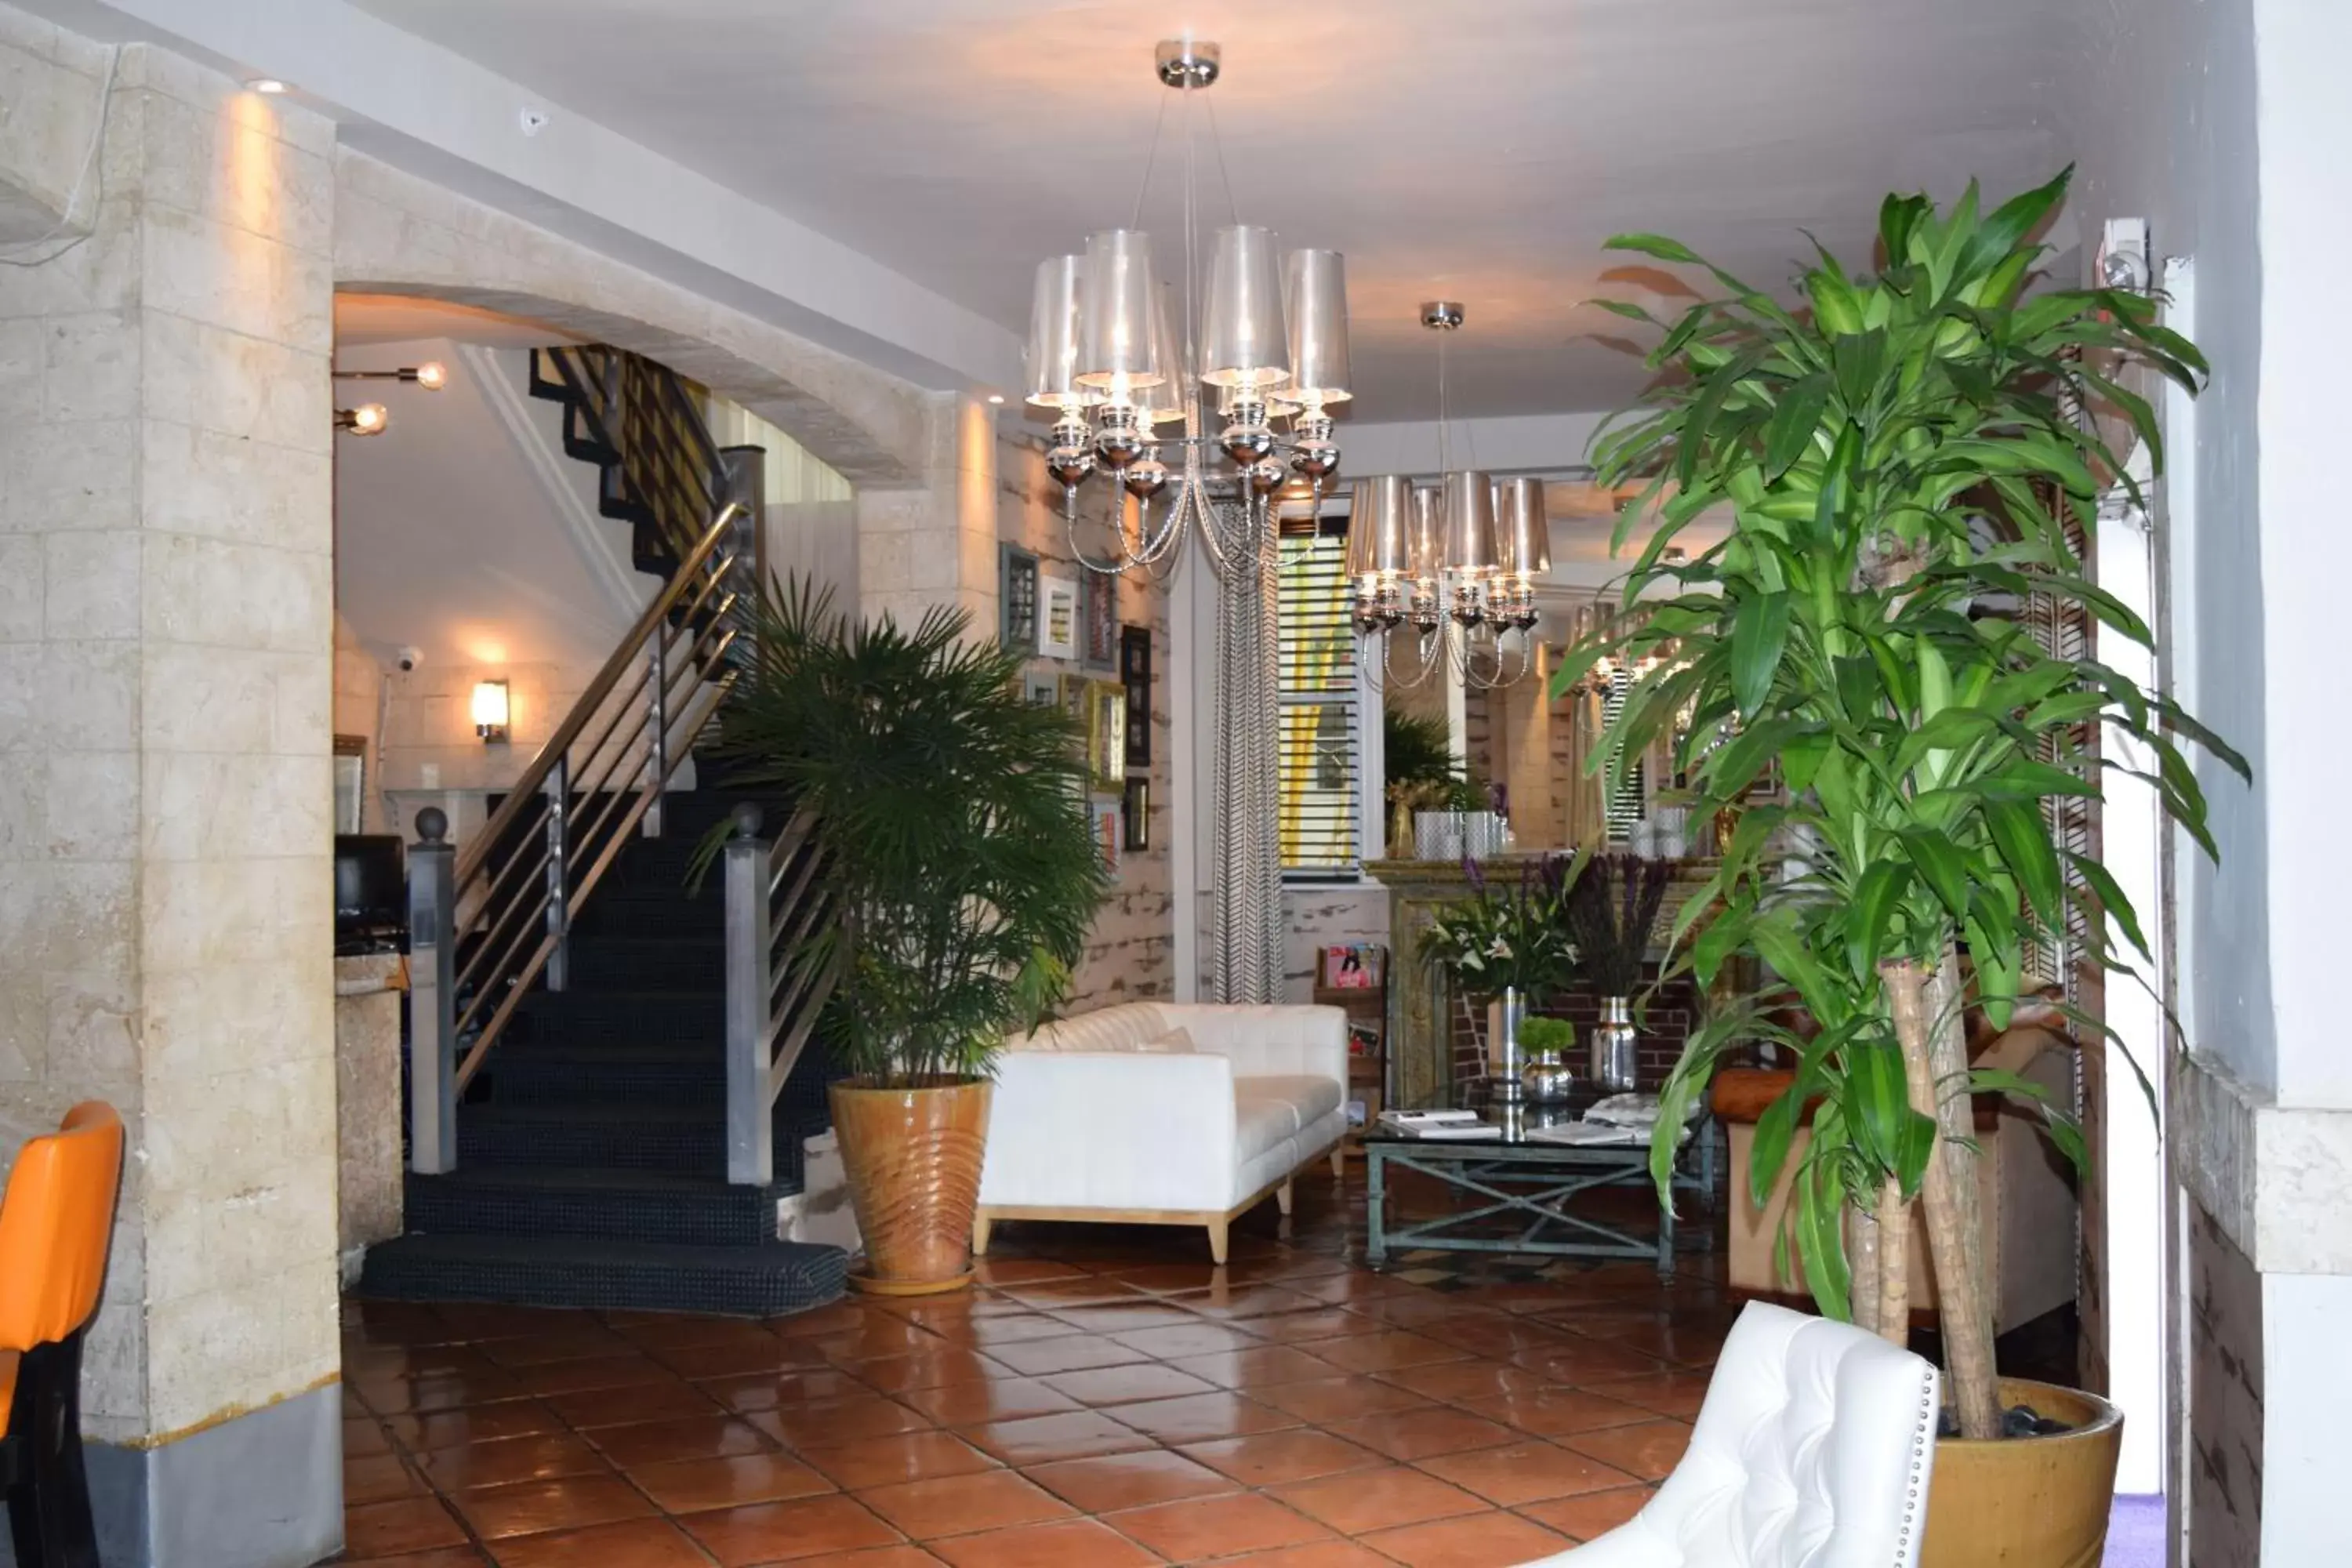 Lobby or reception in Shelley Hotel